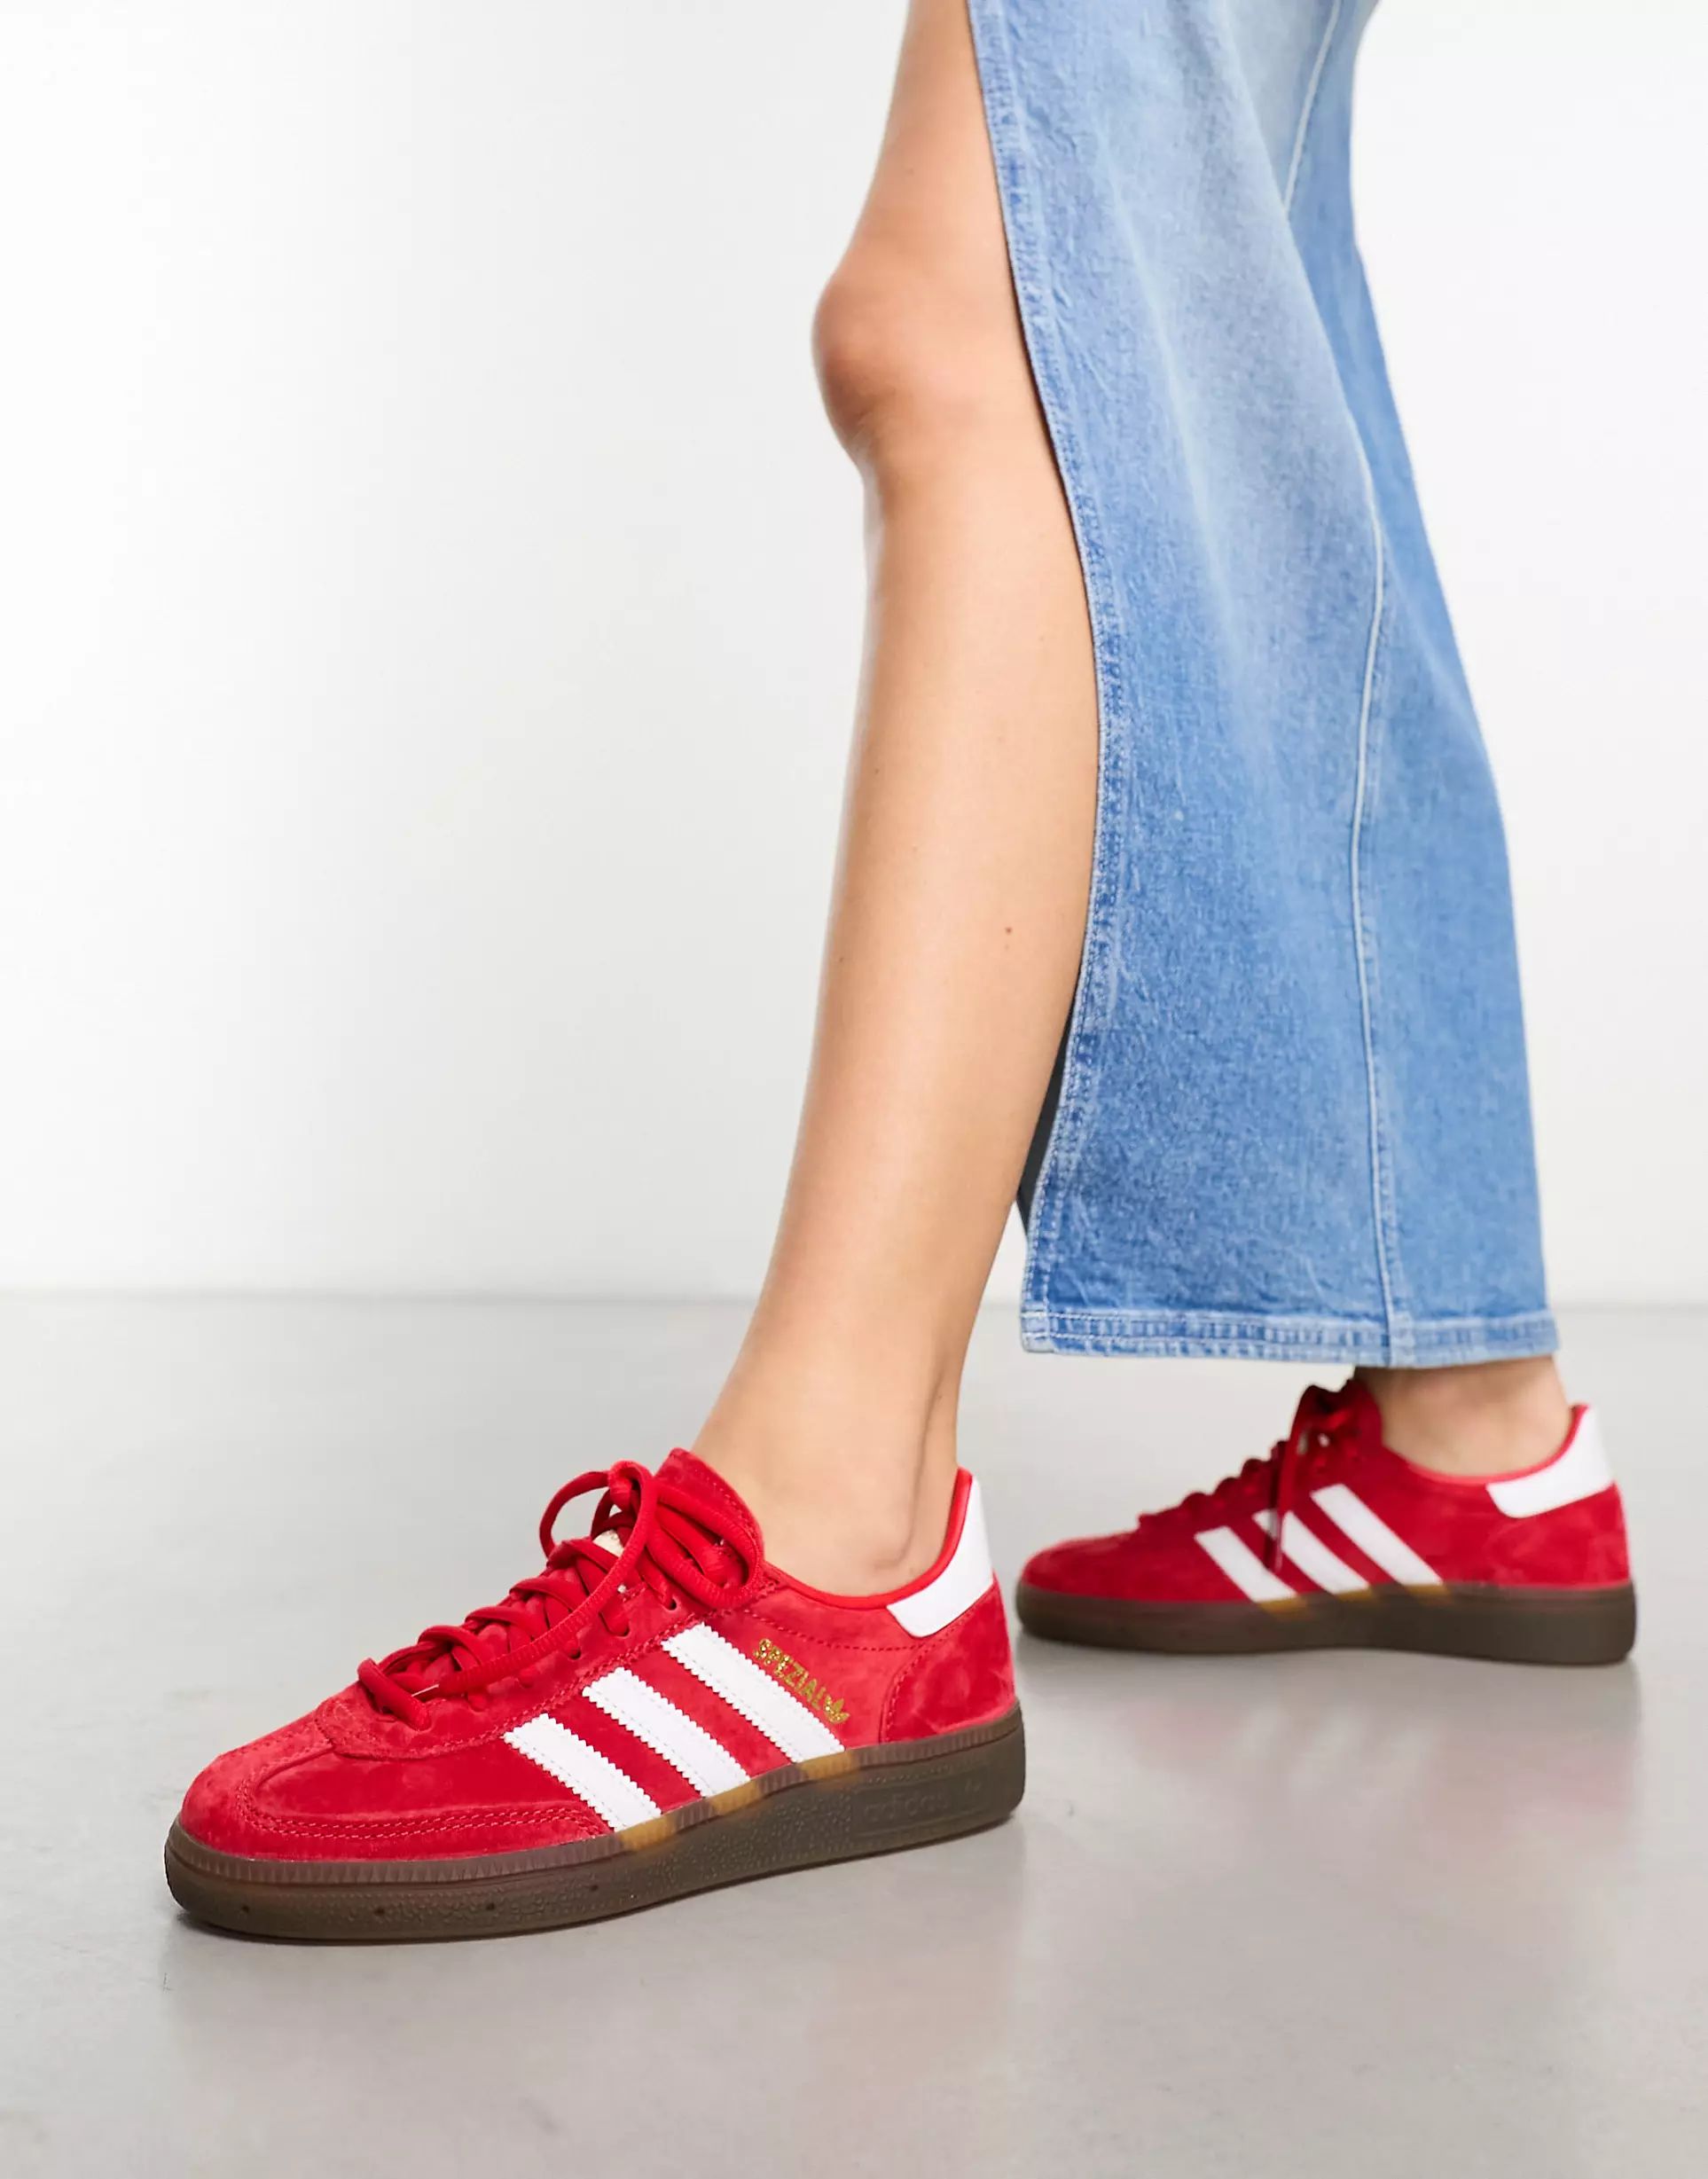 adidas Originals - Handball Spezial - Sneakers rosso scarlatto e bianche con suola in gomma | ASOS (Global)